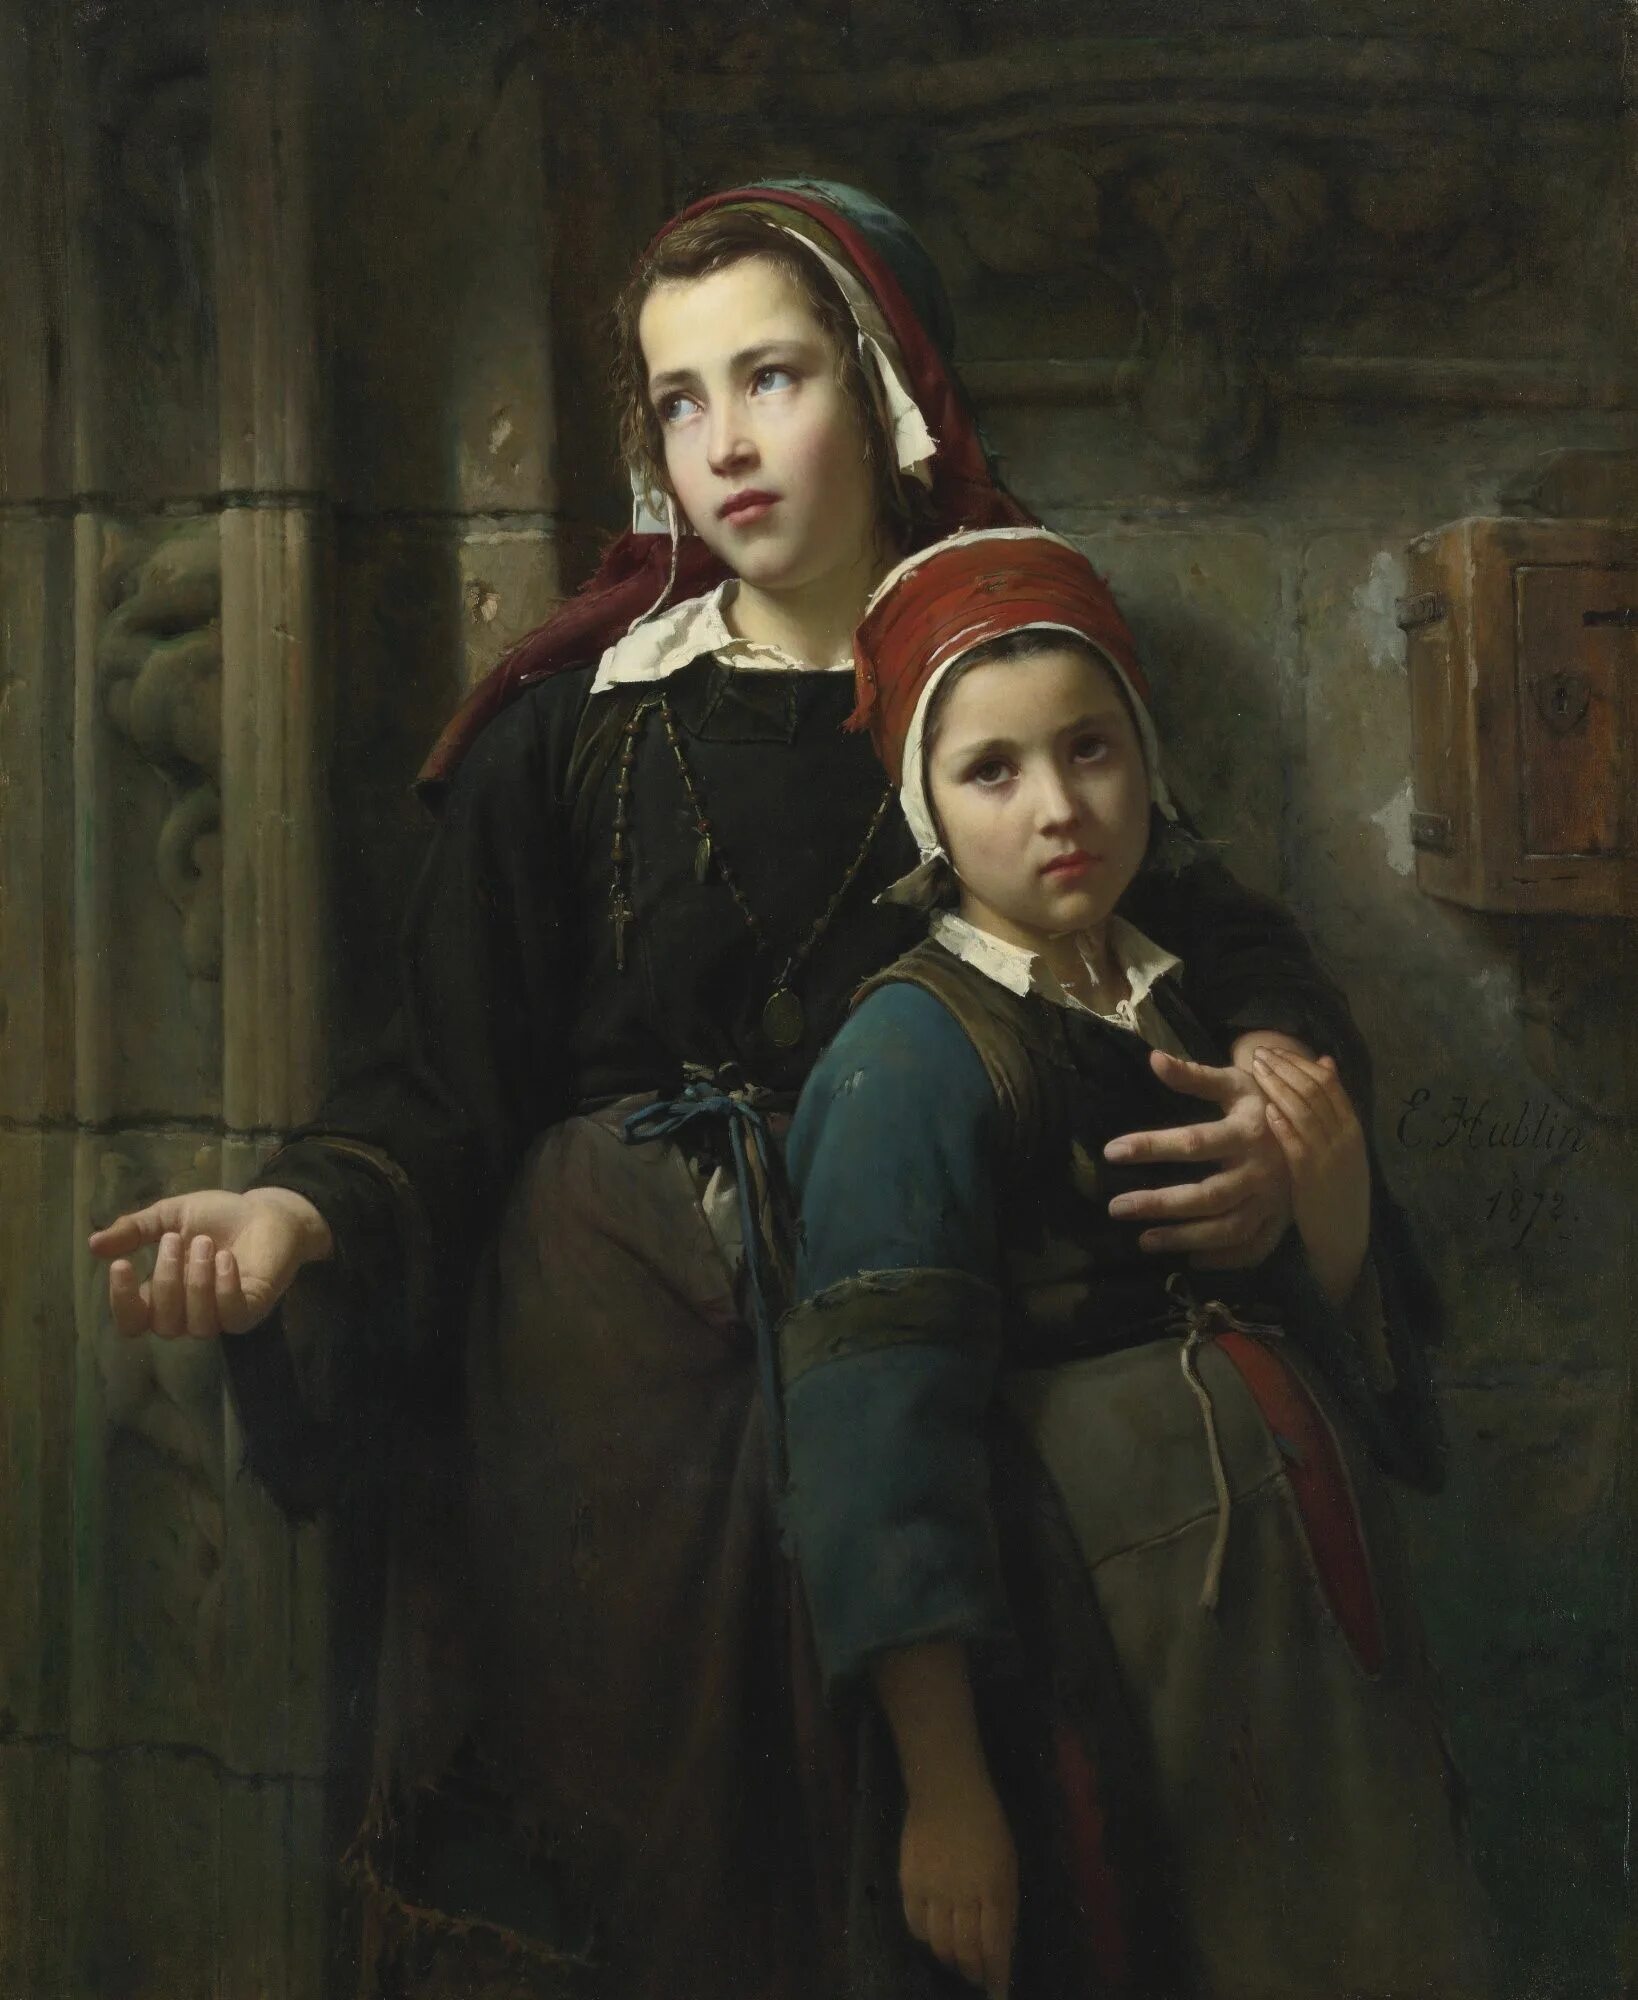 Sister french. Emile-Auguste Hublin (French, 1830-1891). Emile Auguste Hublin.